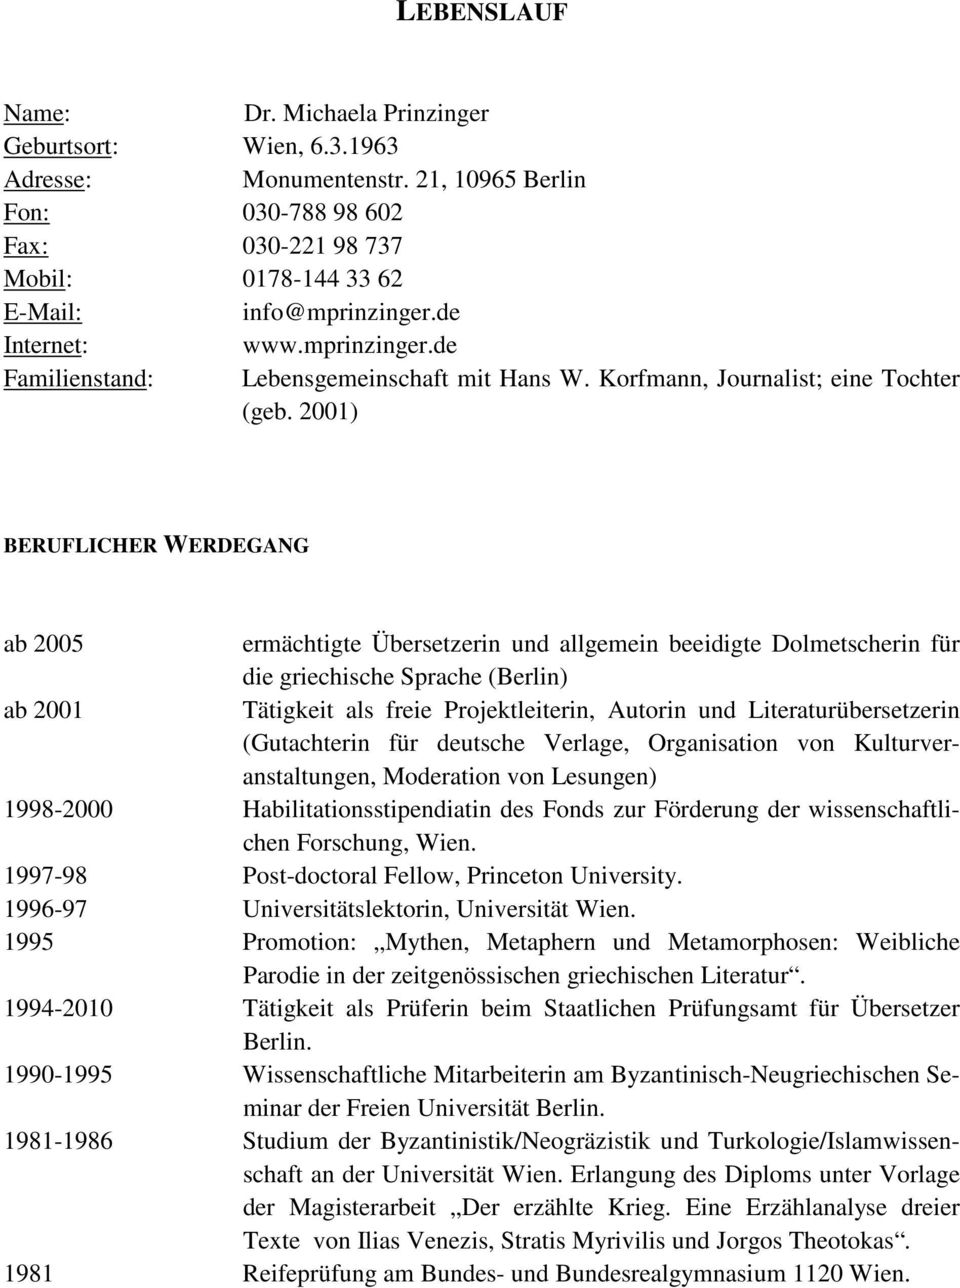 2001) BERUFLICHER WERDEGANG ab 2005 ermächtigte Übersetzerin und allgemein beeidigte Dolmetscherin für die griechische Sprache (Berlin) ab 2001 Tätigkeit als freie Projektleiterin, Autorin und